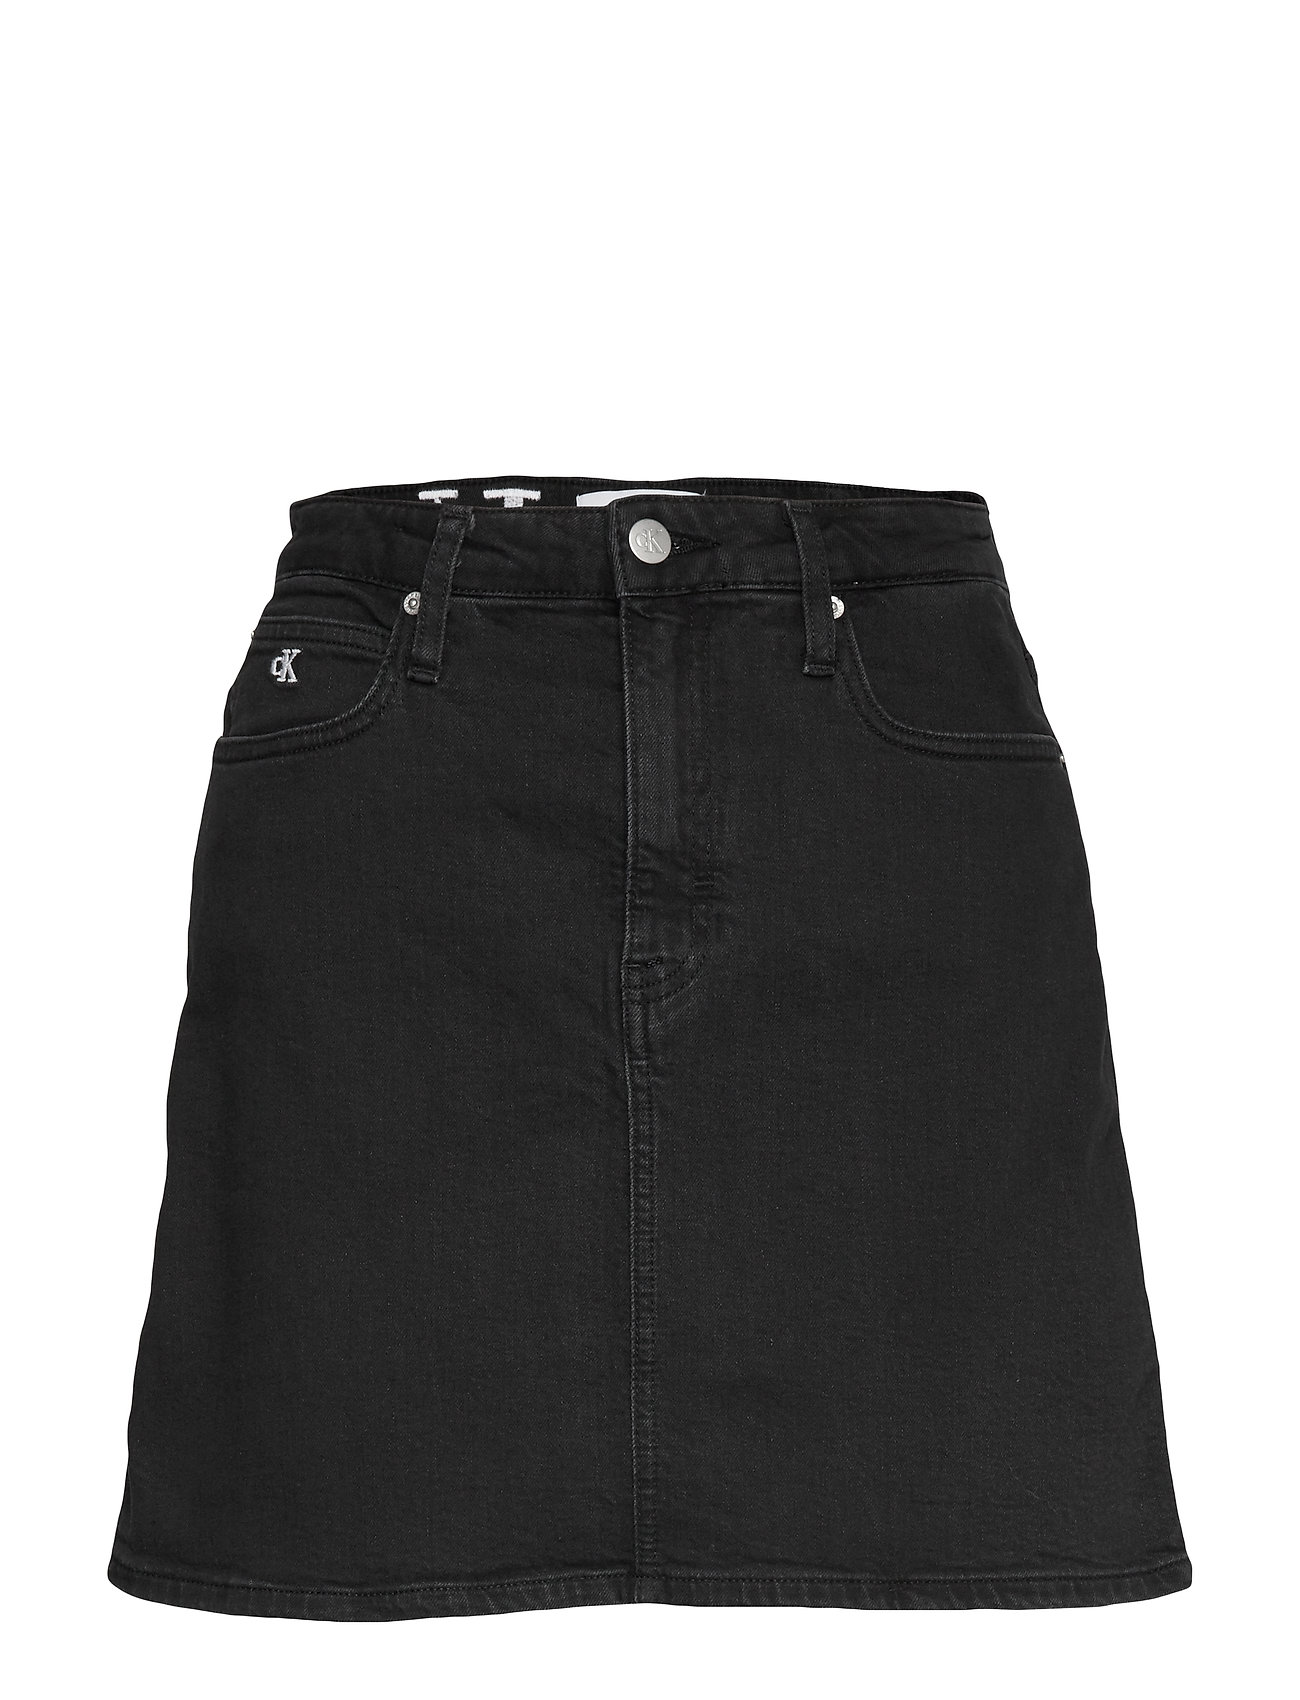 calvin klein black denim skirt